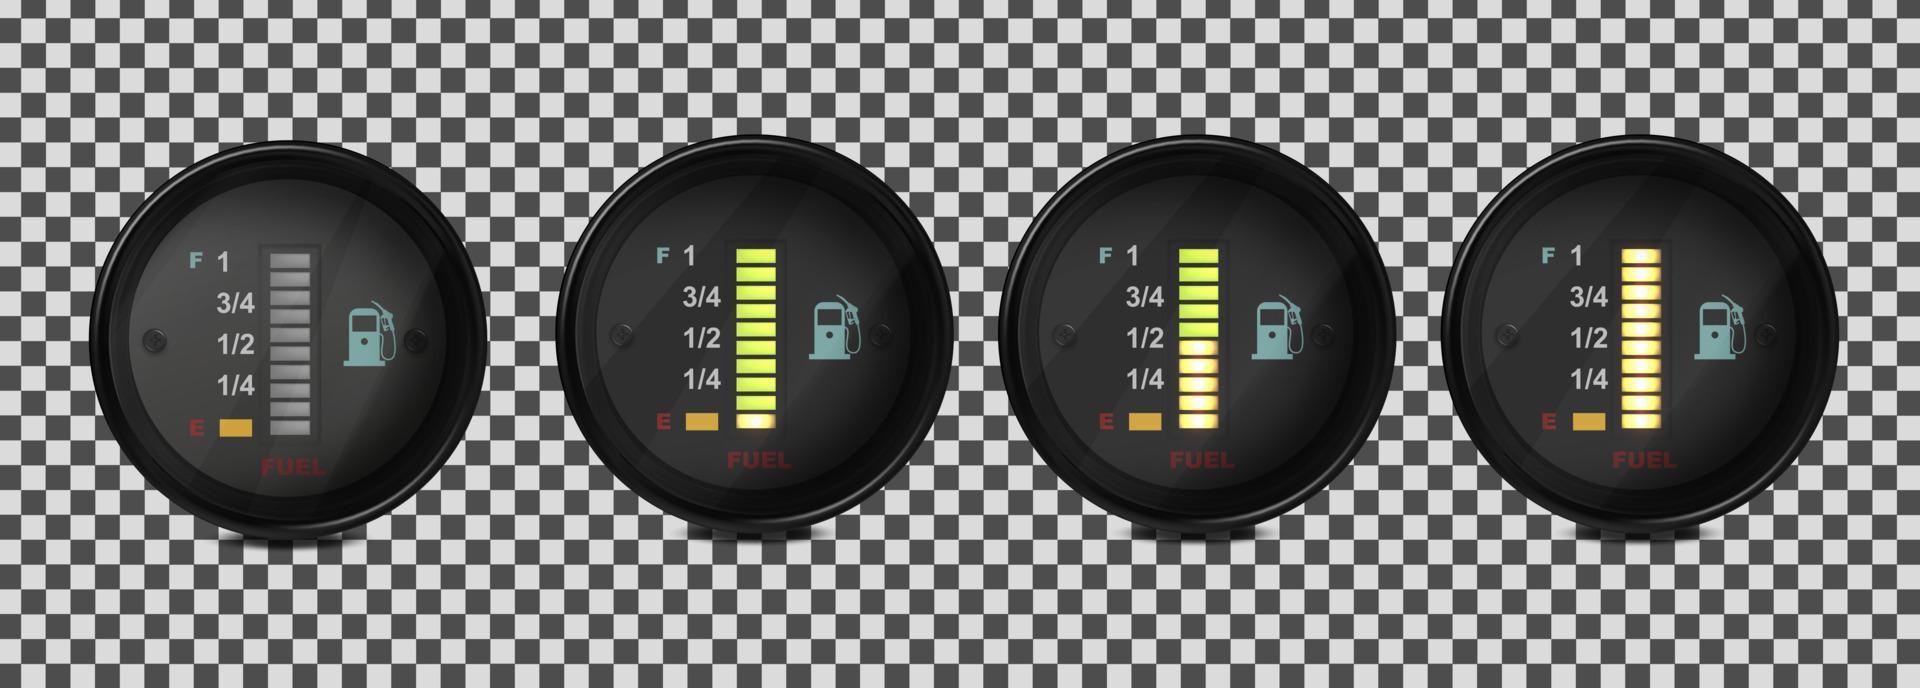 vector realista, 3d conjunto de indicadores de nivel de combustible en un coche. ilustración sobre un fondo transparente.